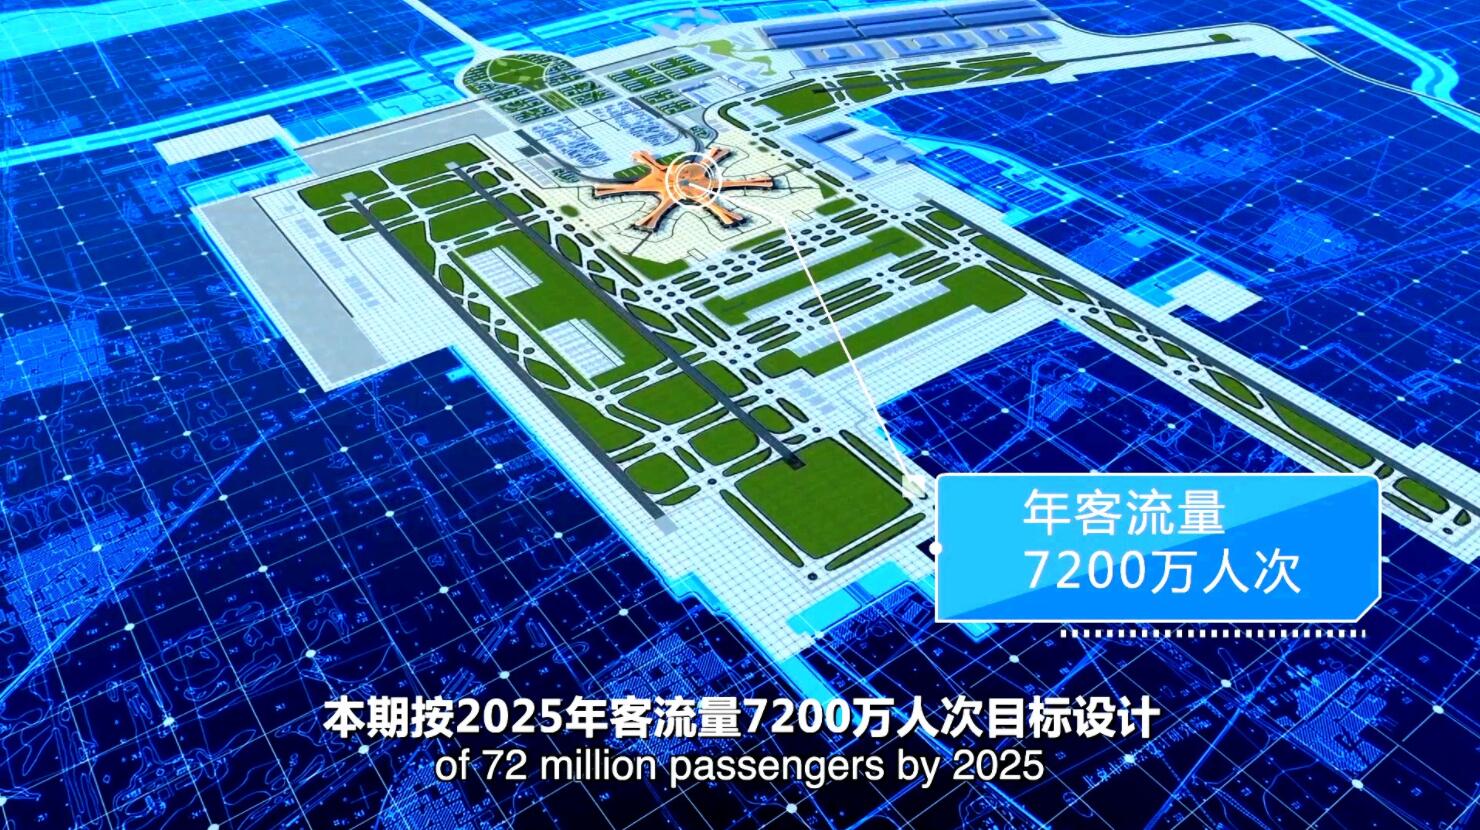 北京大兴国际机场昨日竣工 京将进入双机场时代